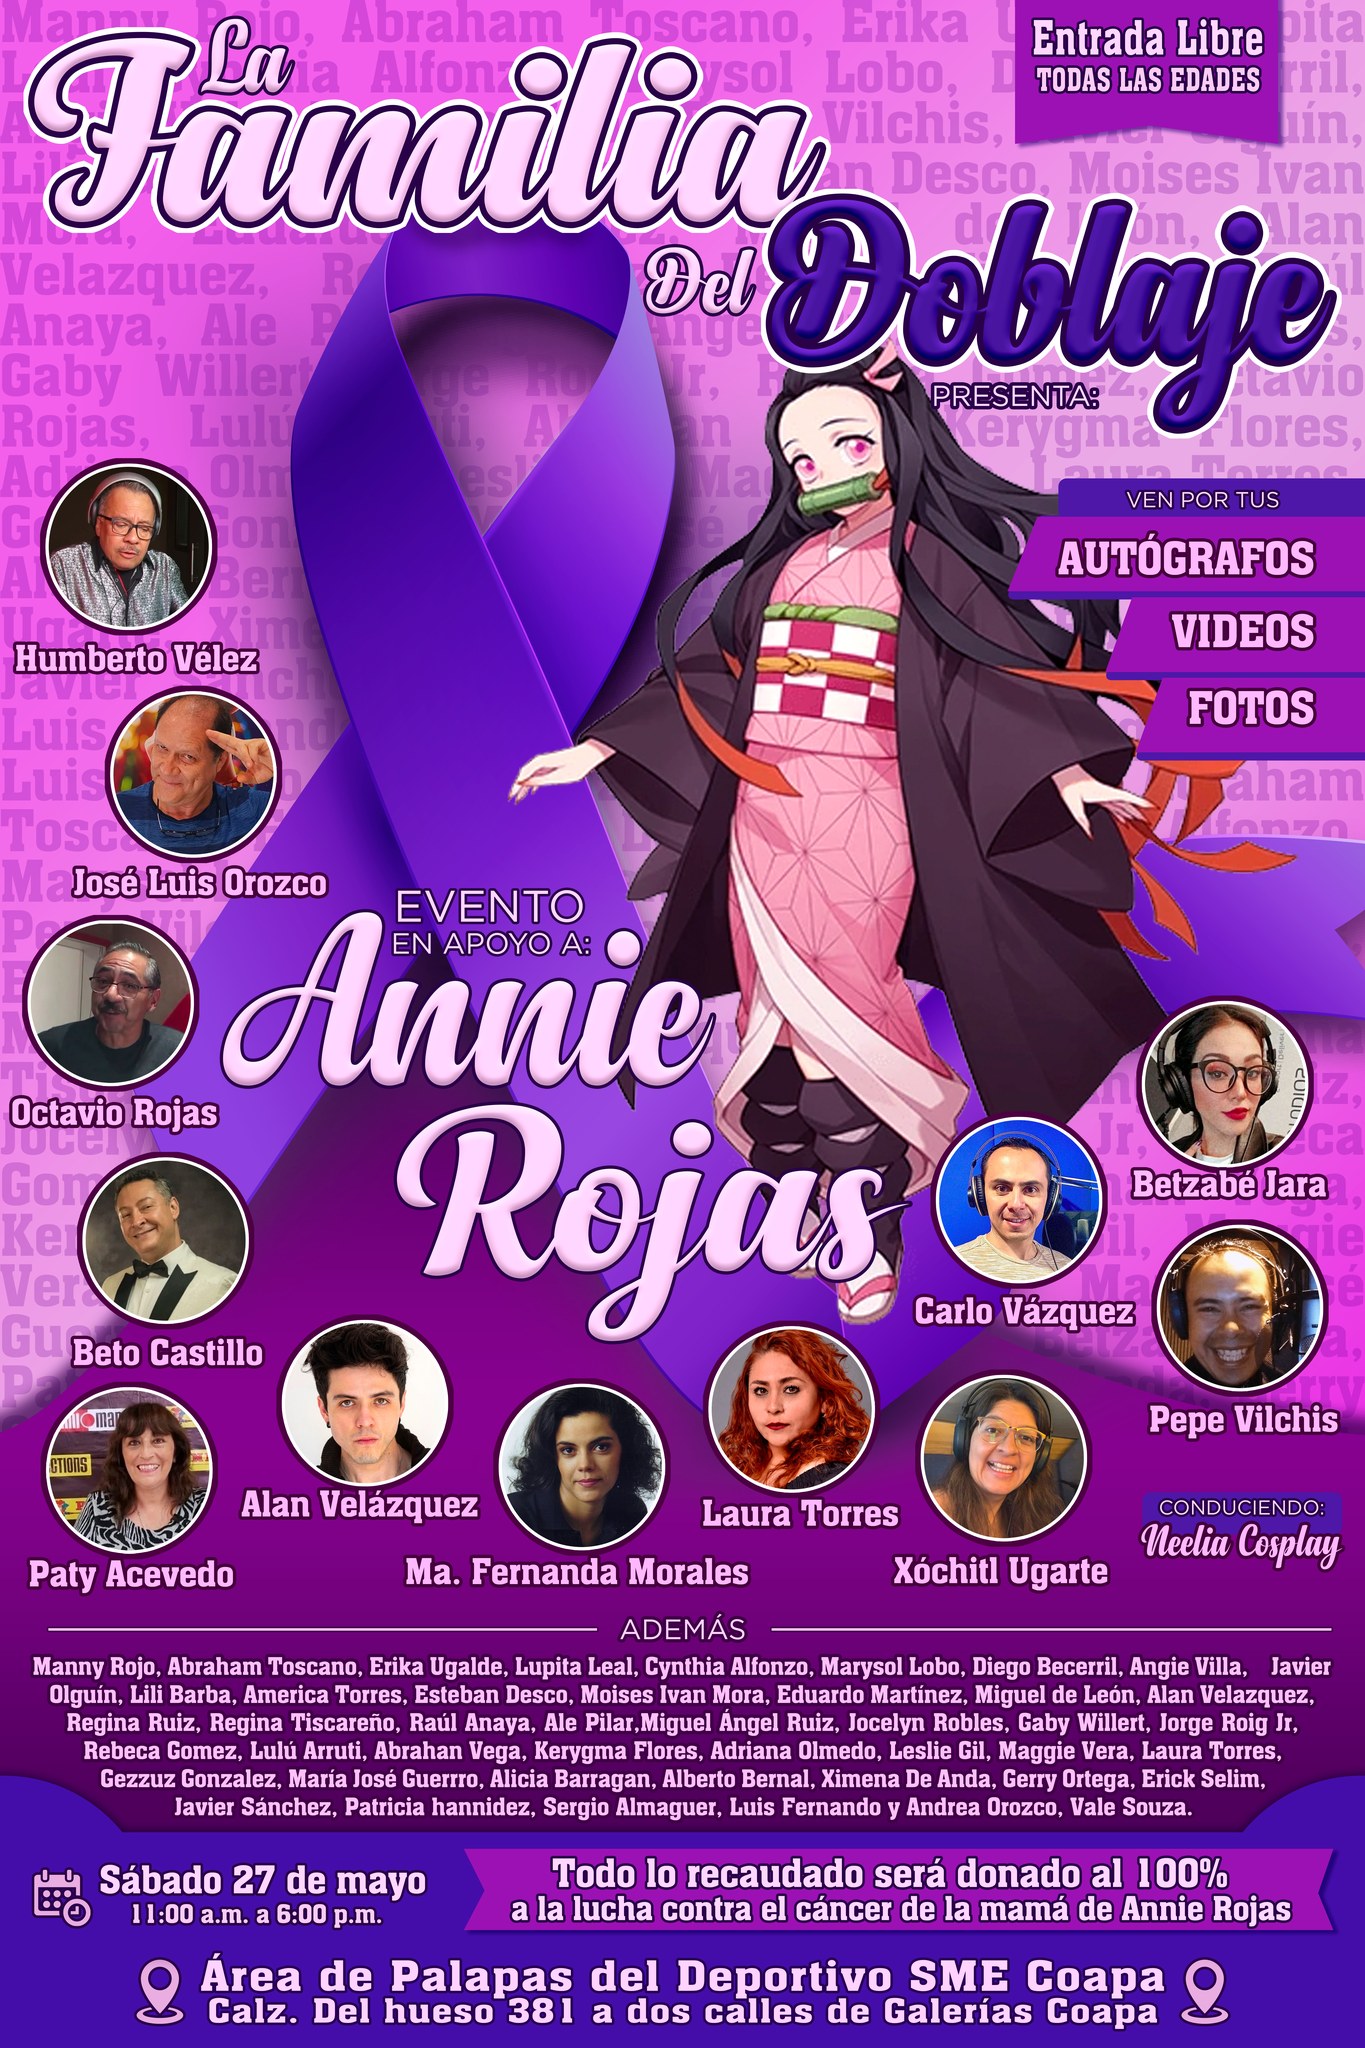 ¡Ñoños Unidos! Diversos fandoms se unen para apoyar a Annie Rojas 3